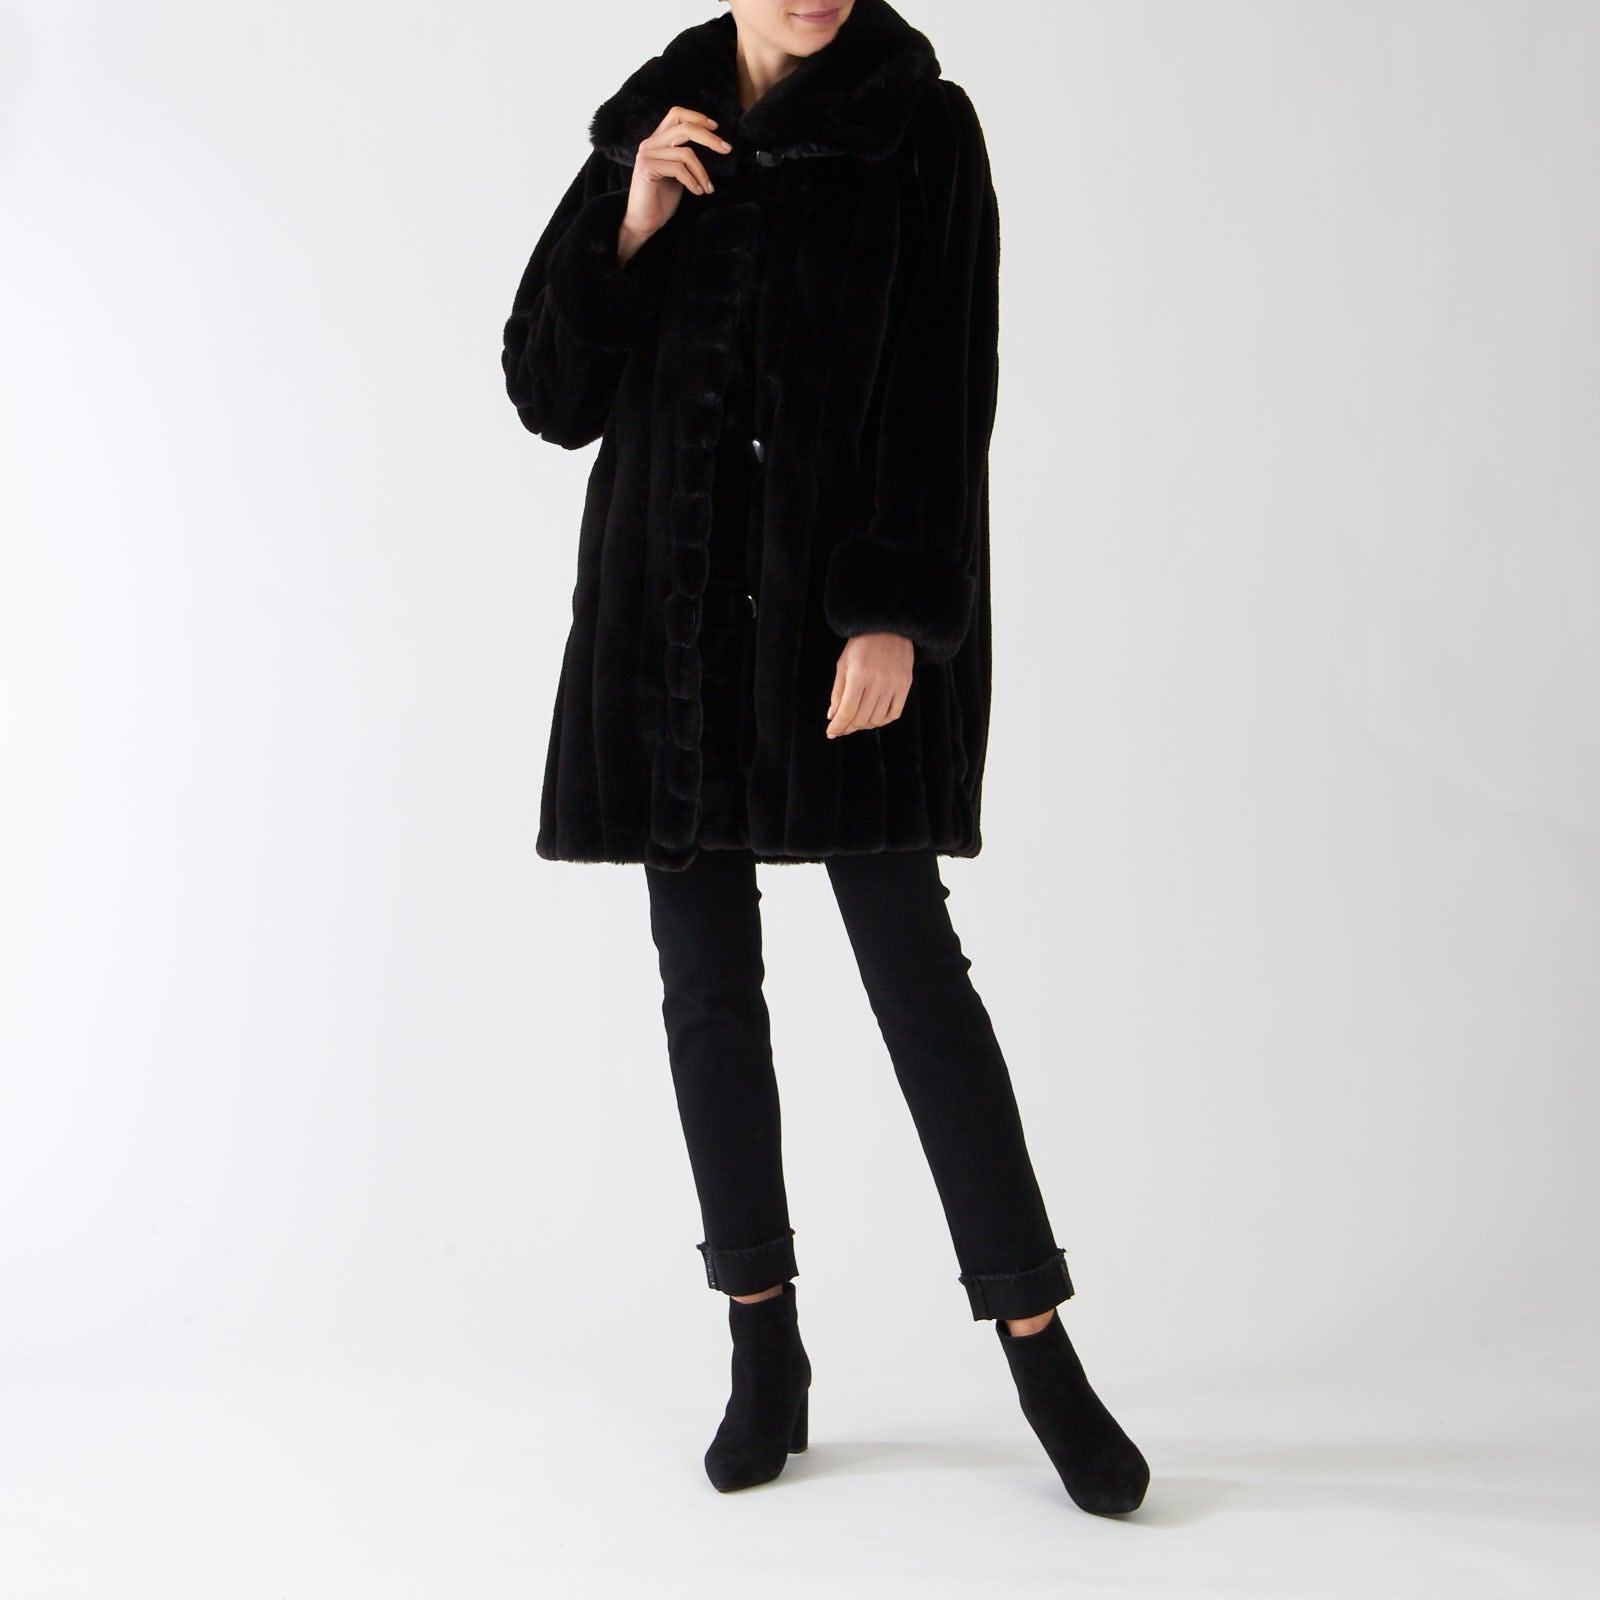 Black Faux Fur Reversible Coat